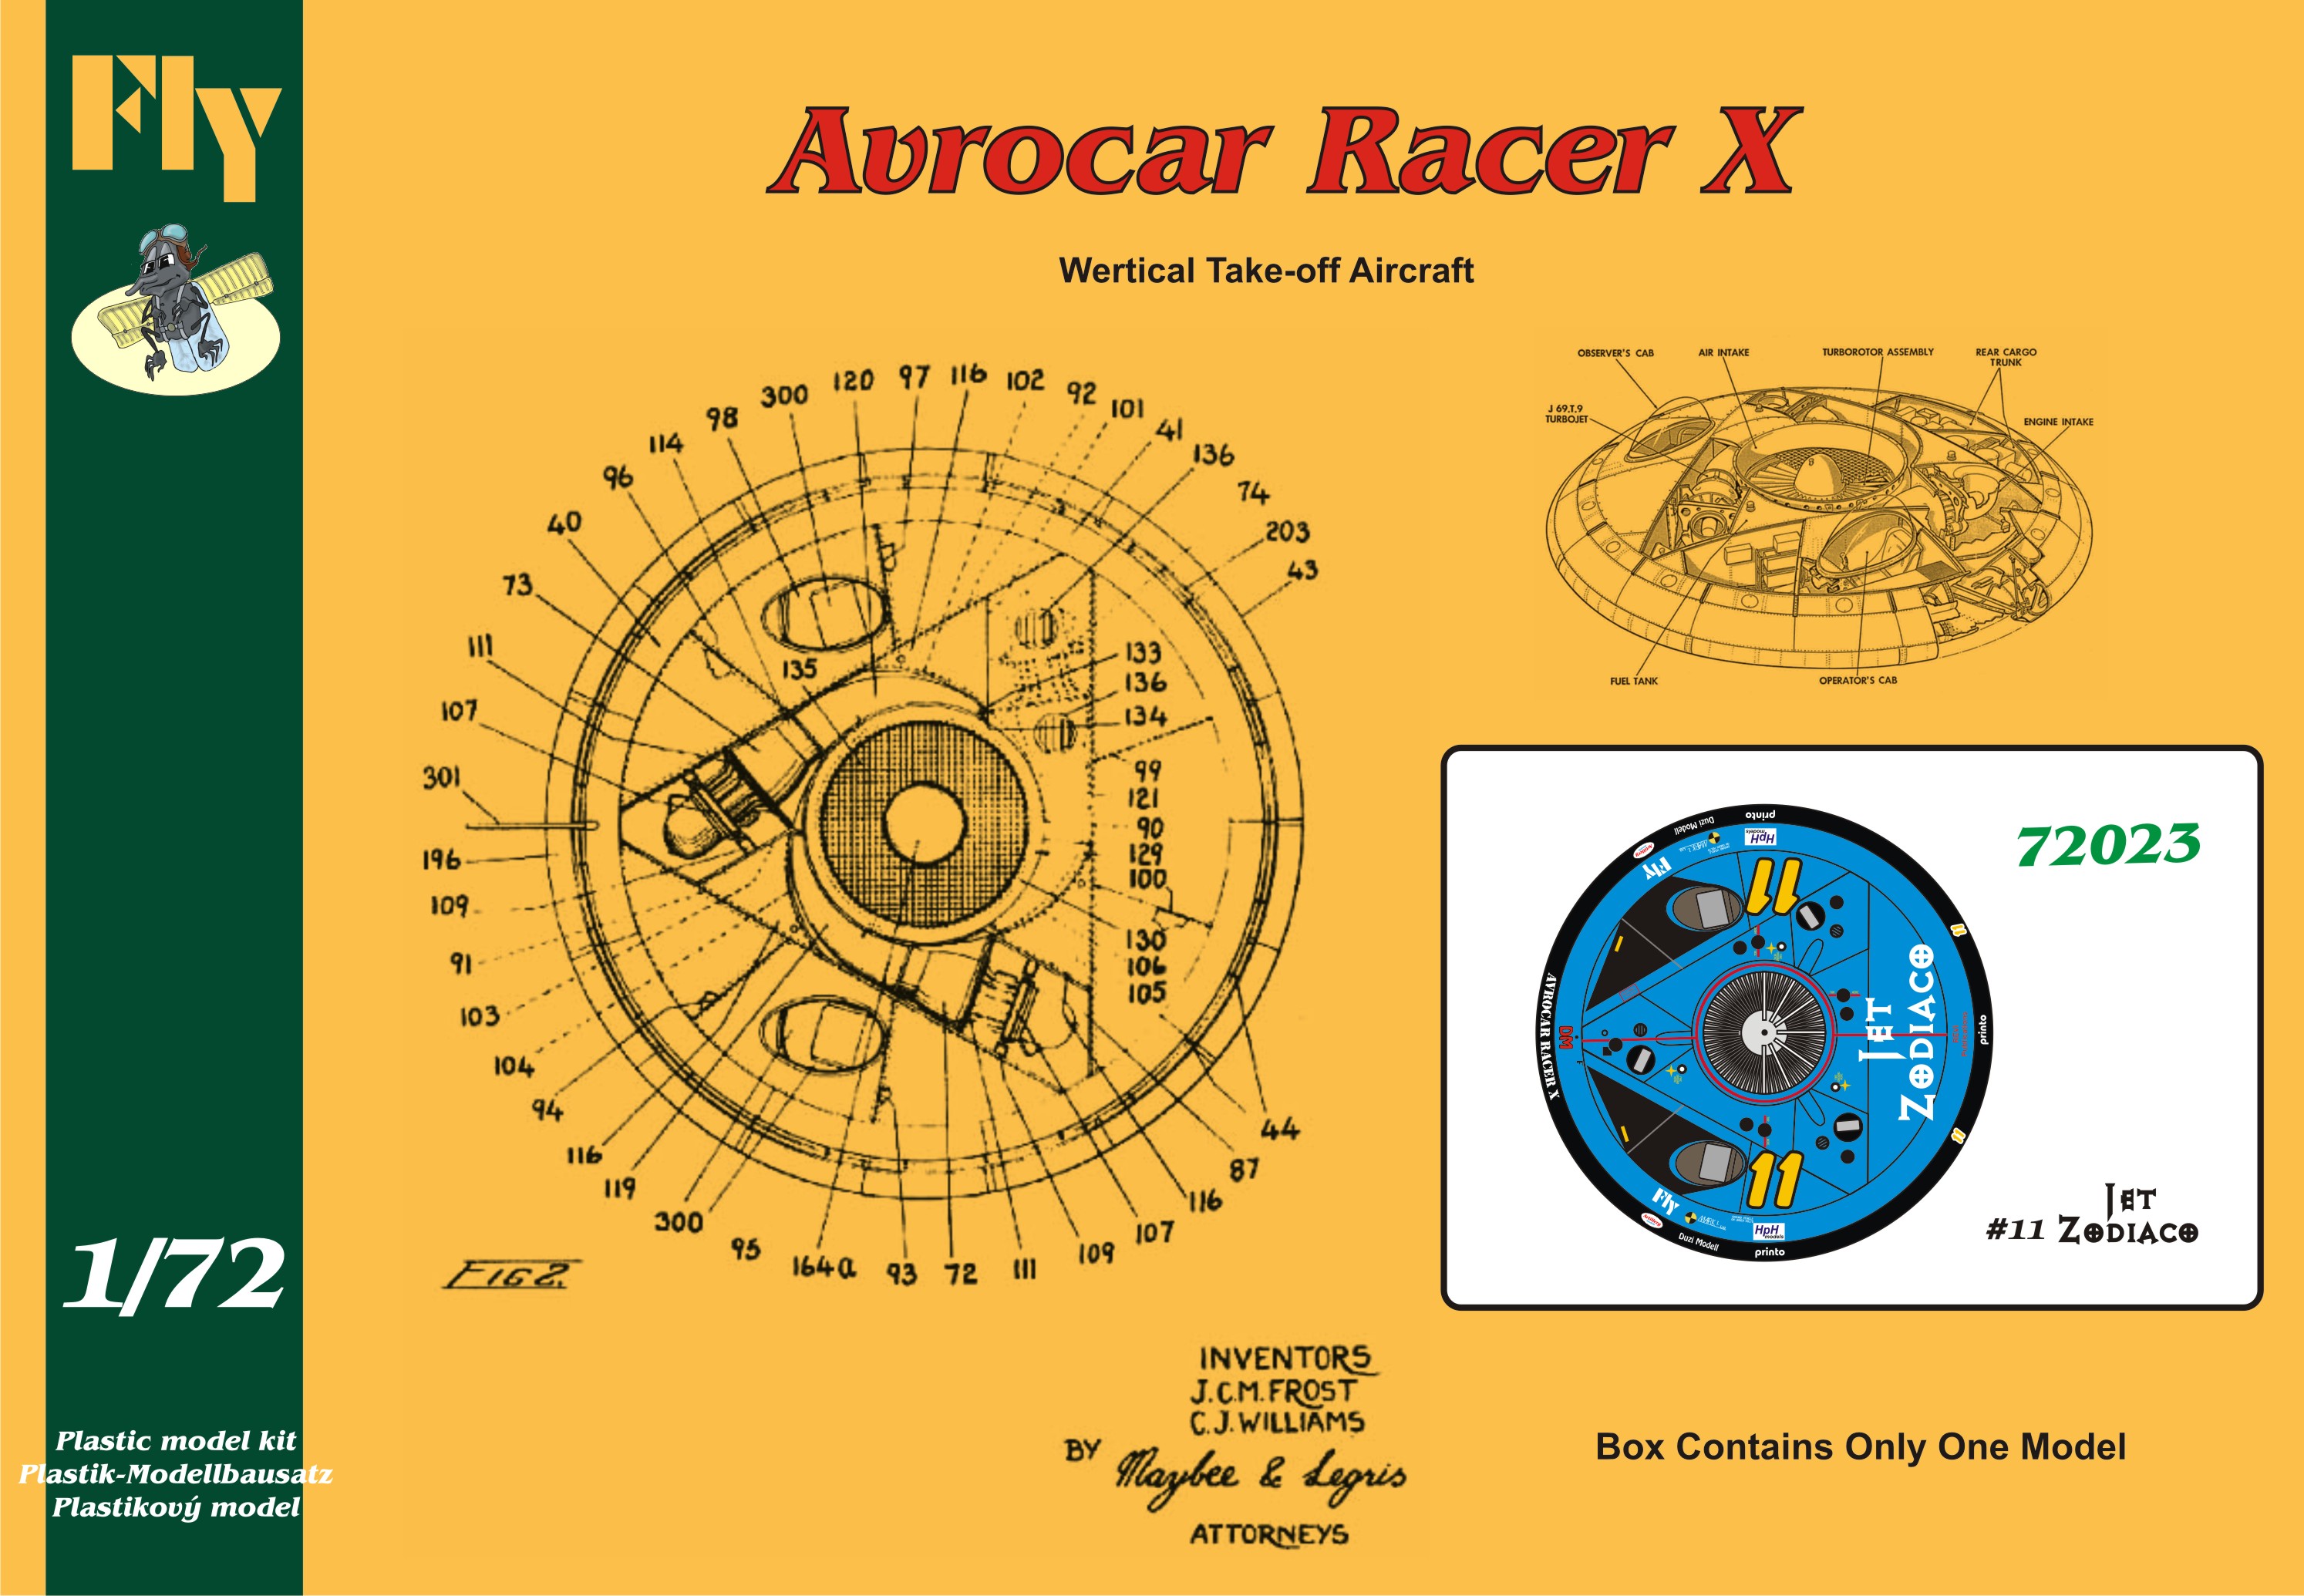 Avrocar Racer X Zodiaco Jet